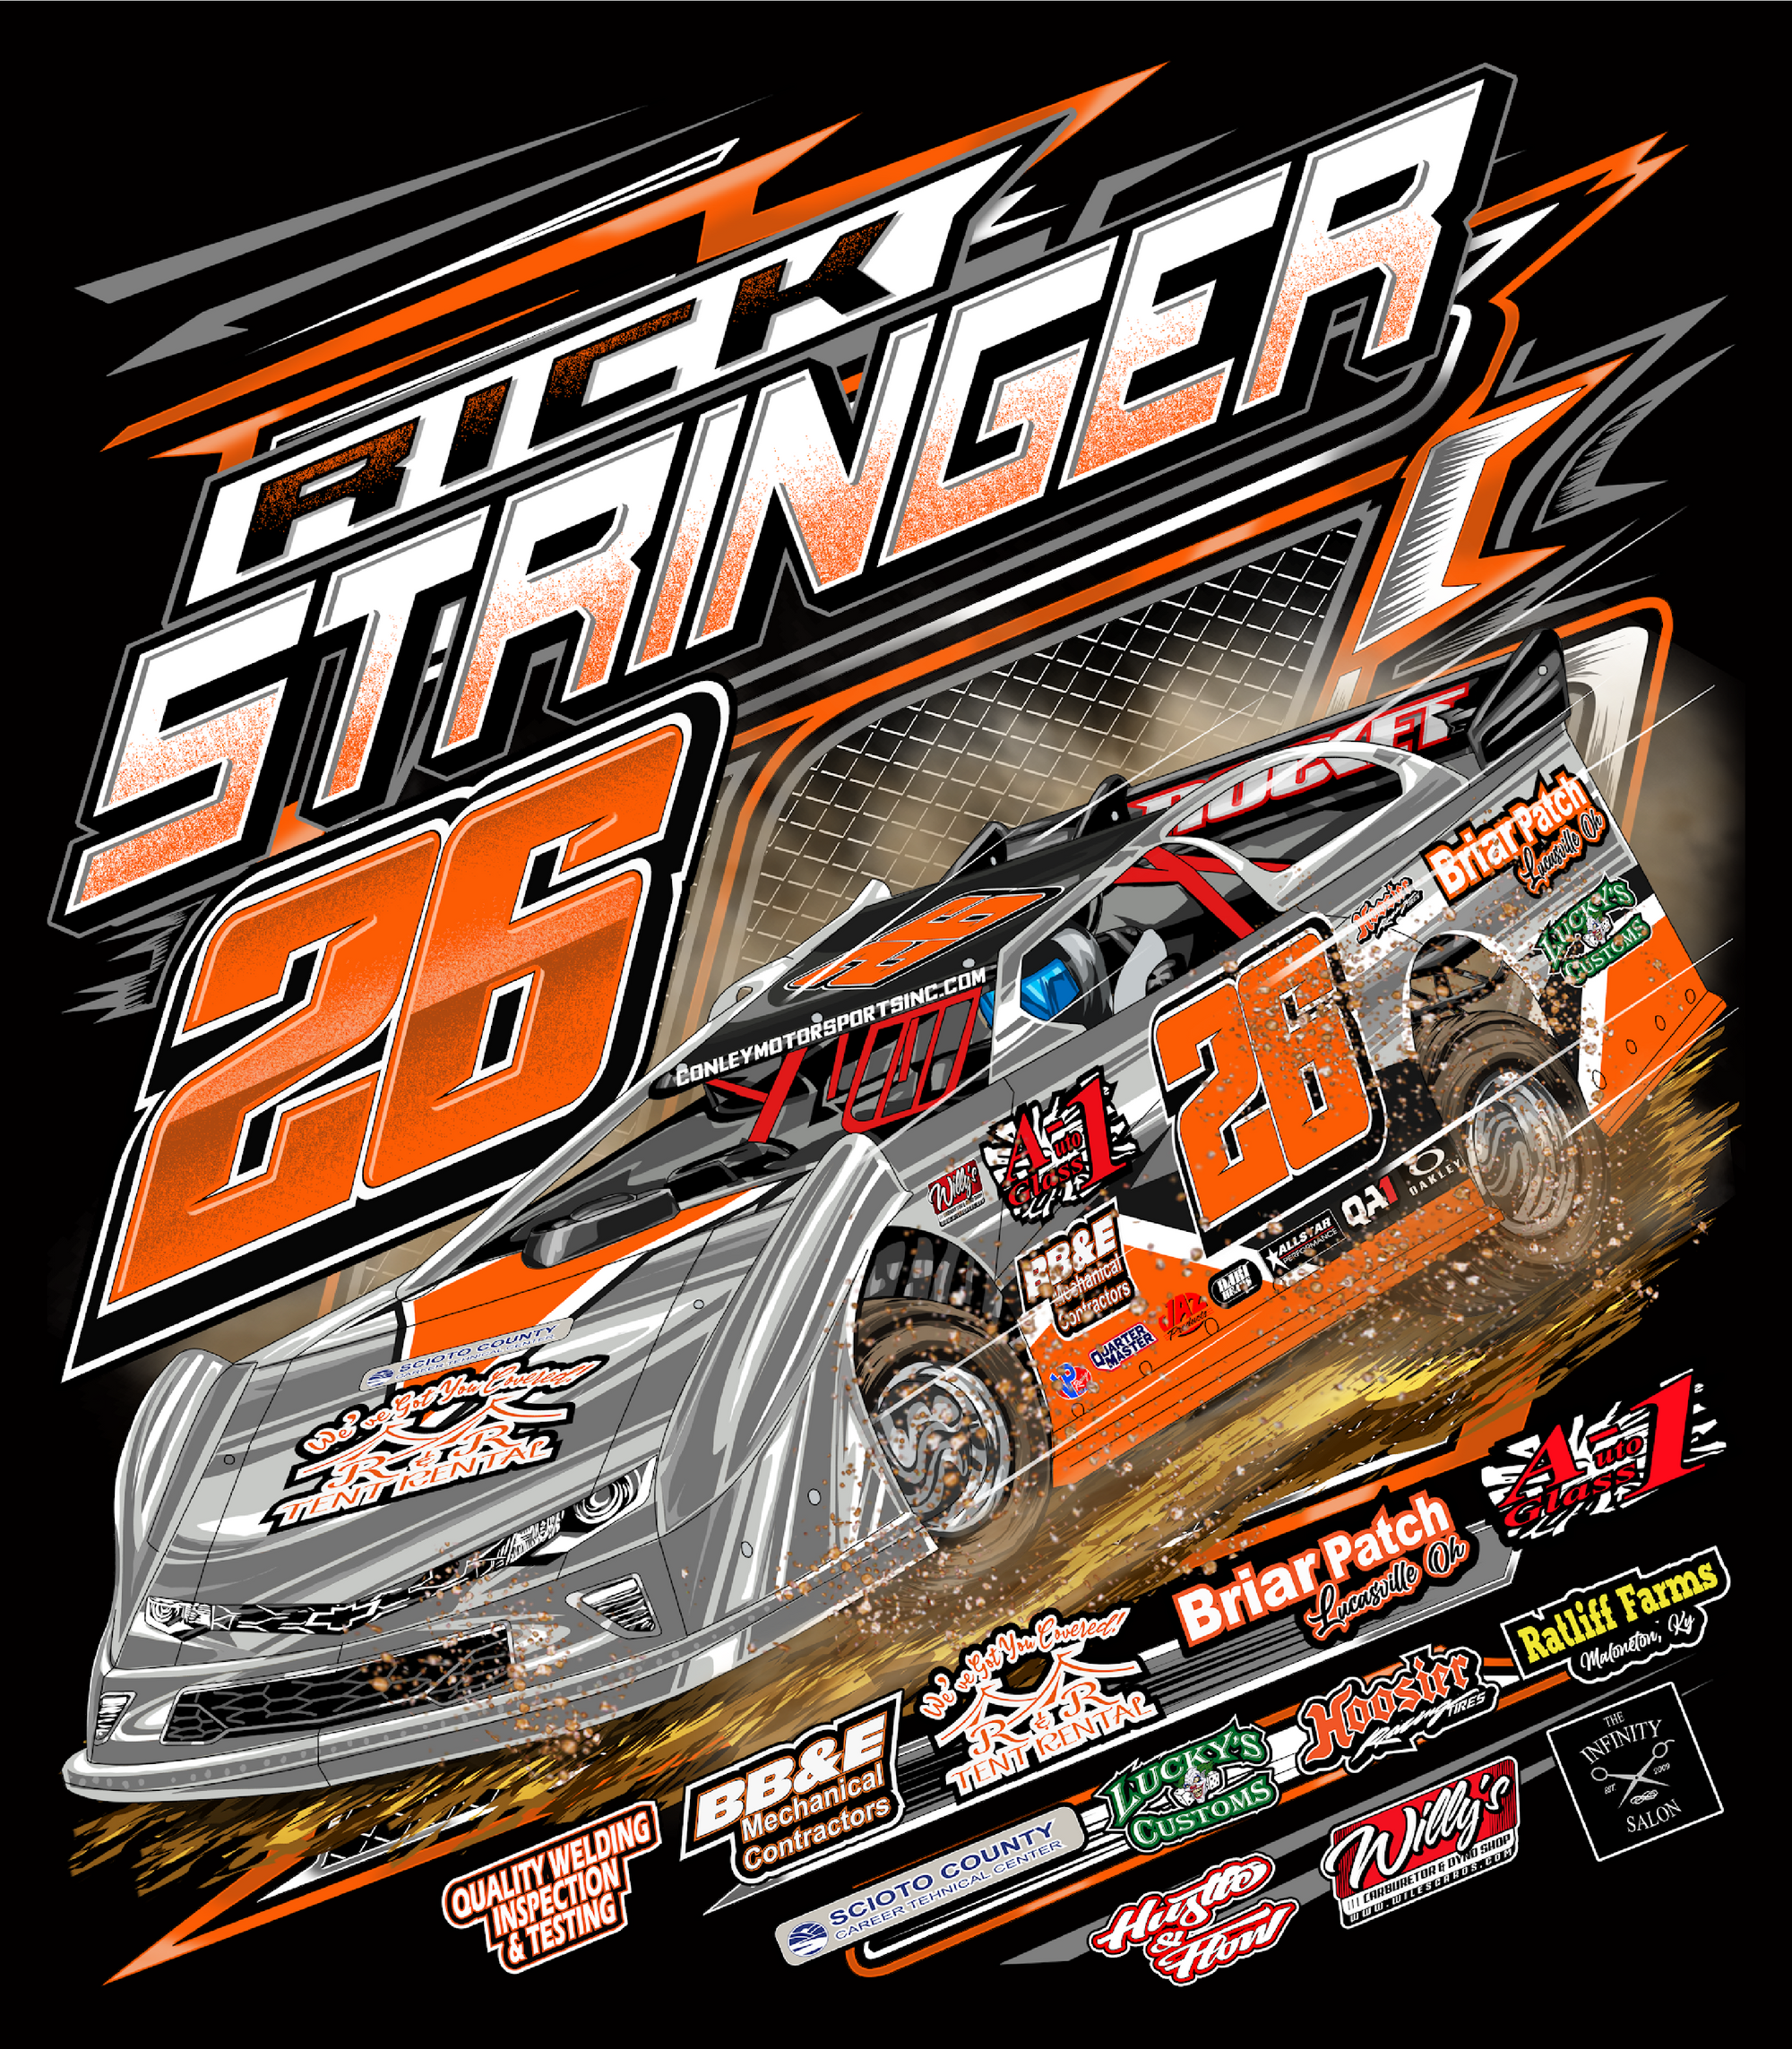 Rick Stringer